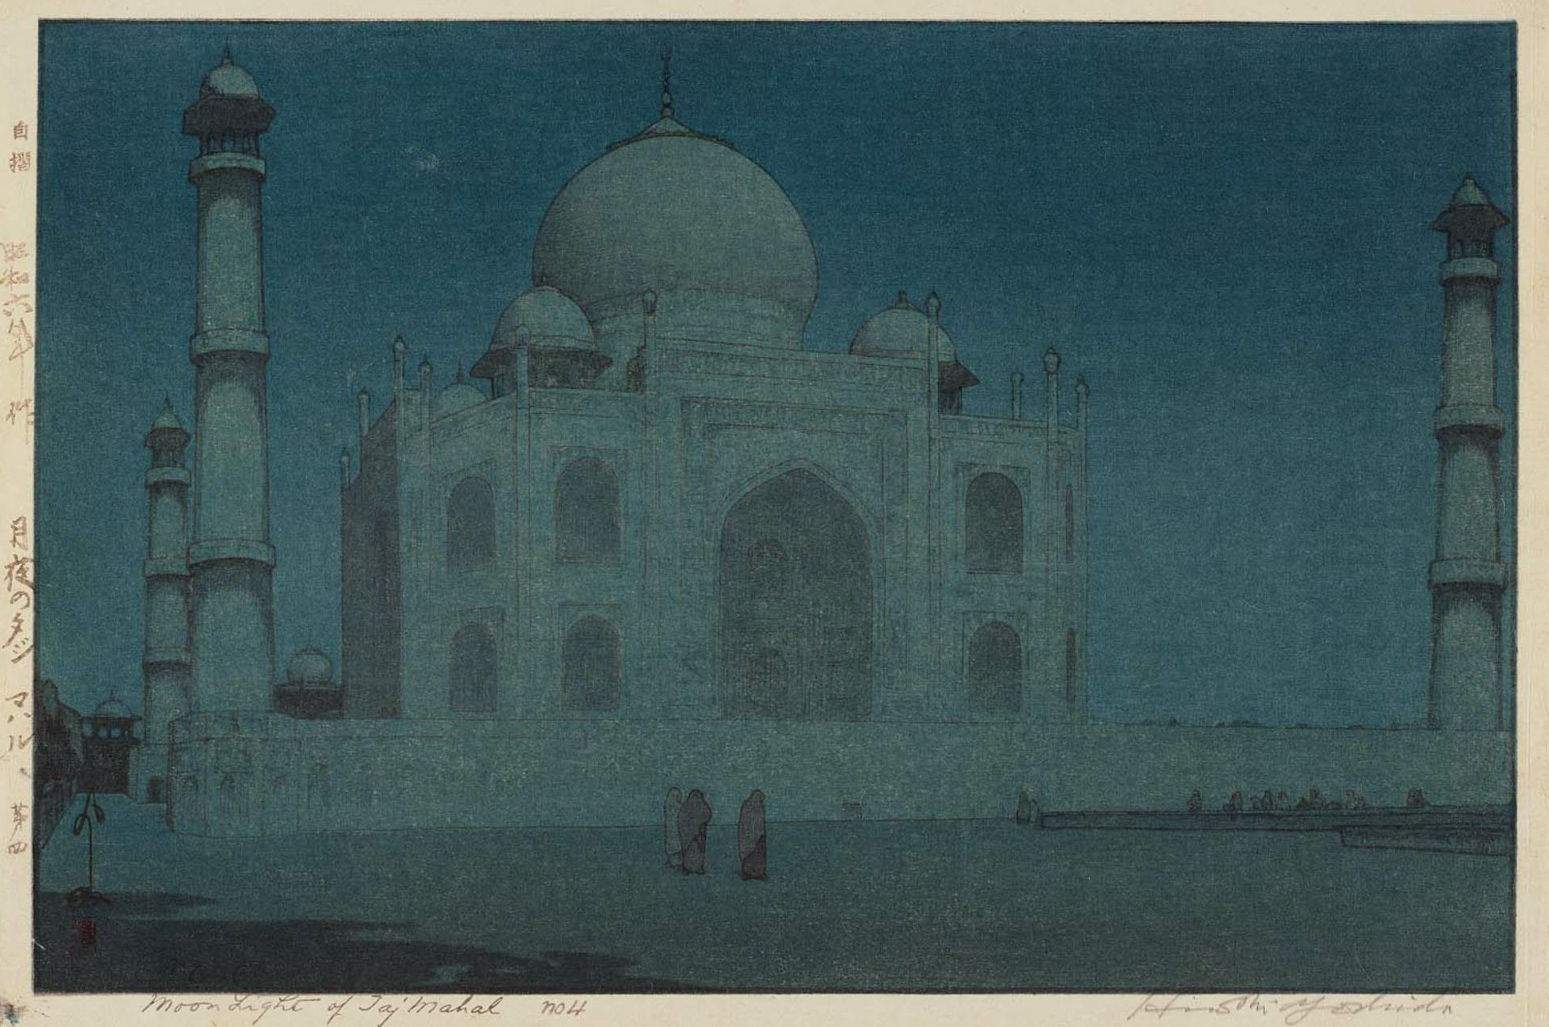 Hiroshi Yoshida “Taj Mahal in Moonlight, No. 4” 1931 woodblock print